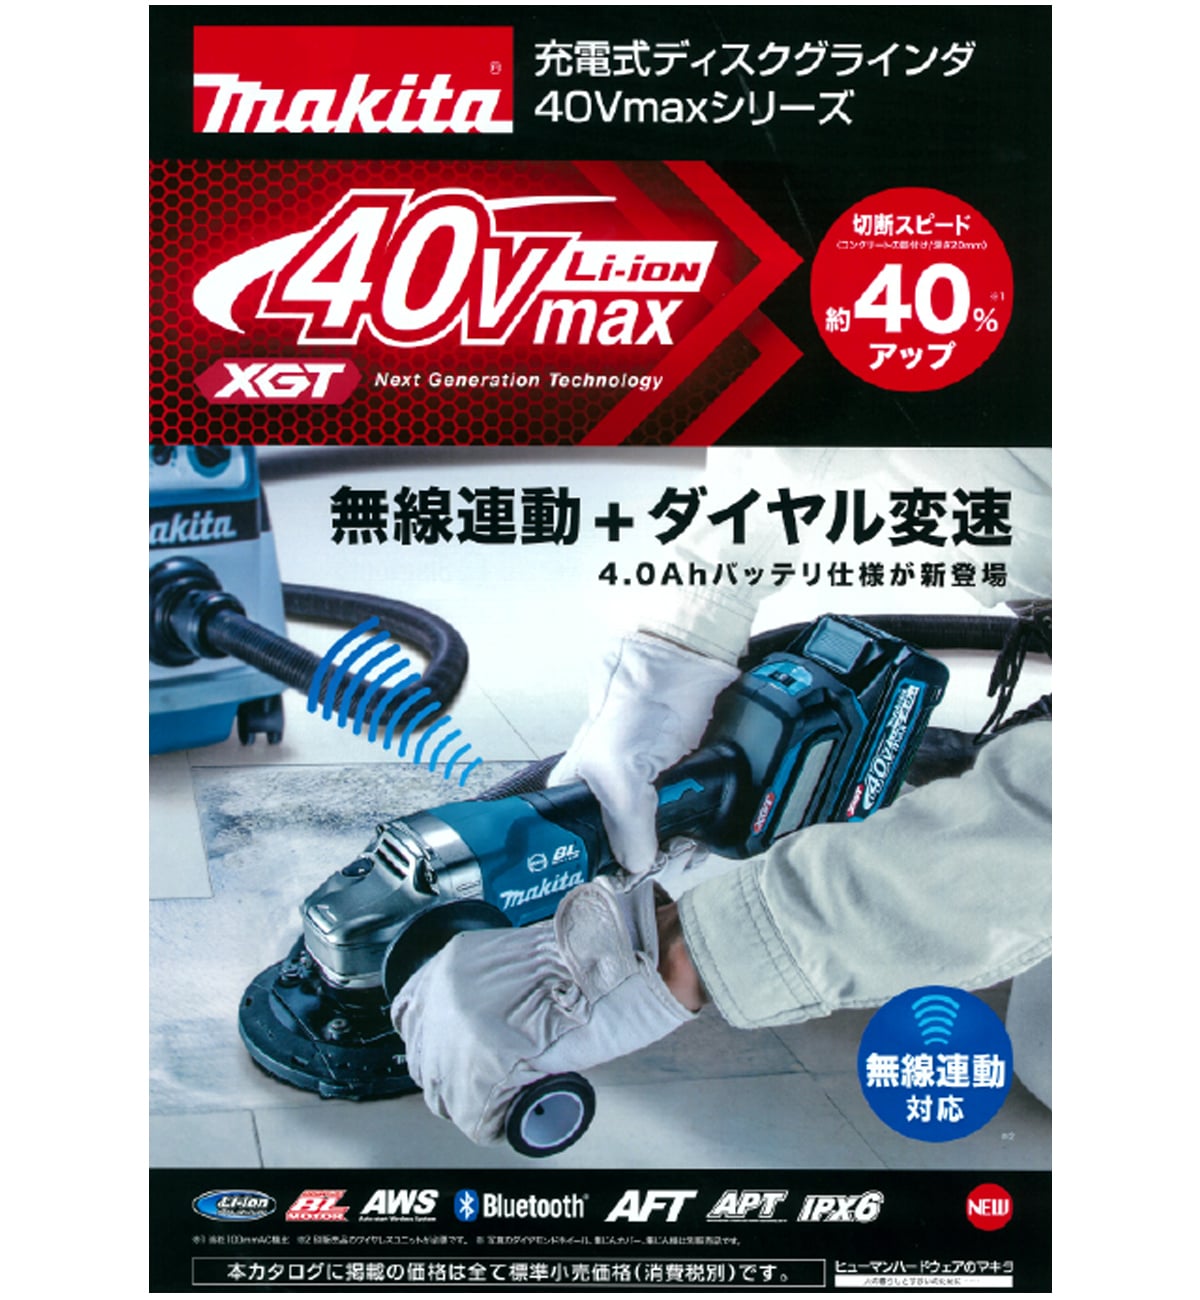 マキタ GA017GRMX 40Vmax充電式ディスクグラインダ100mm ウエダ金物【公式サイト】